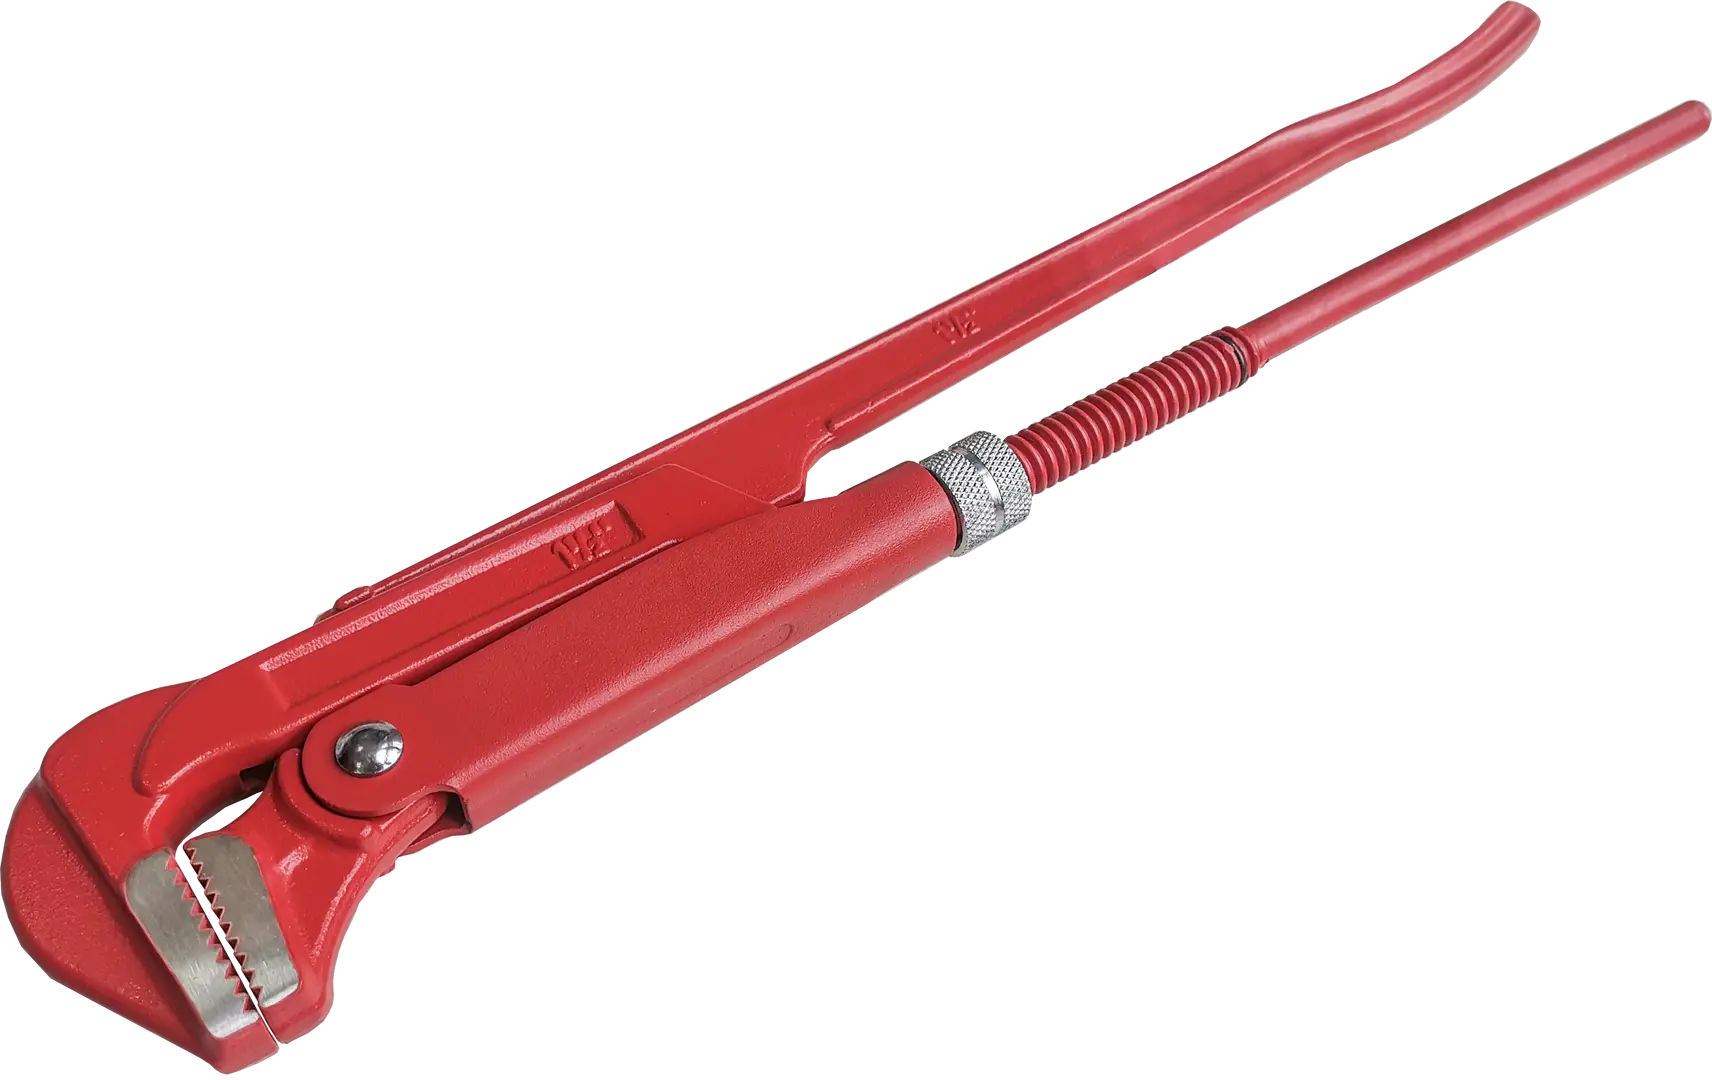 Ключ трубный газовый рычажный КТР-2 захват 40 мм, длина 420 мм трубный глухой метчик русский инструмент